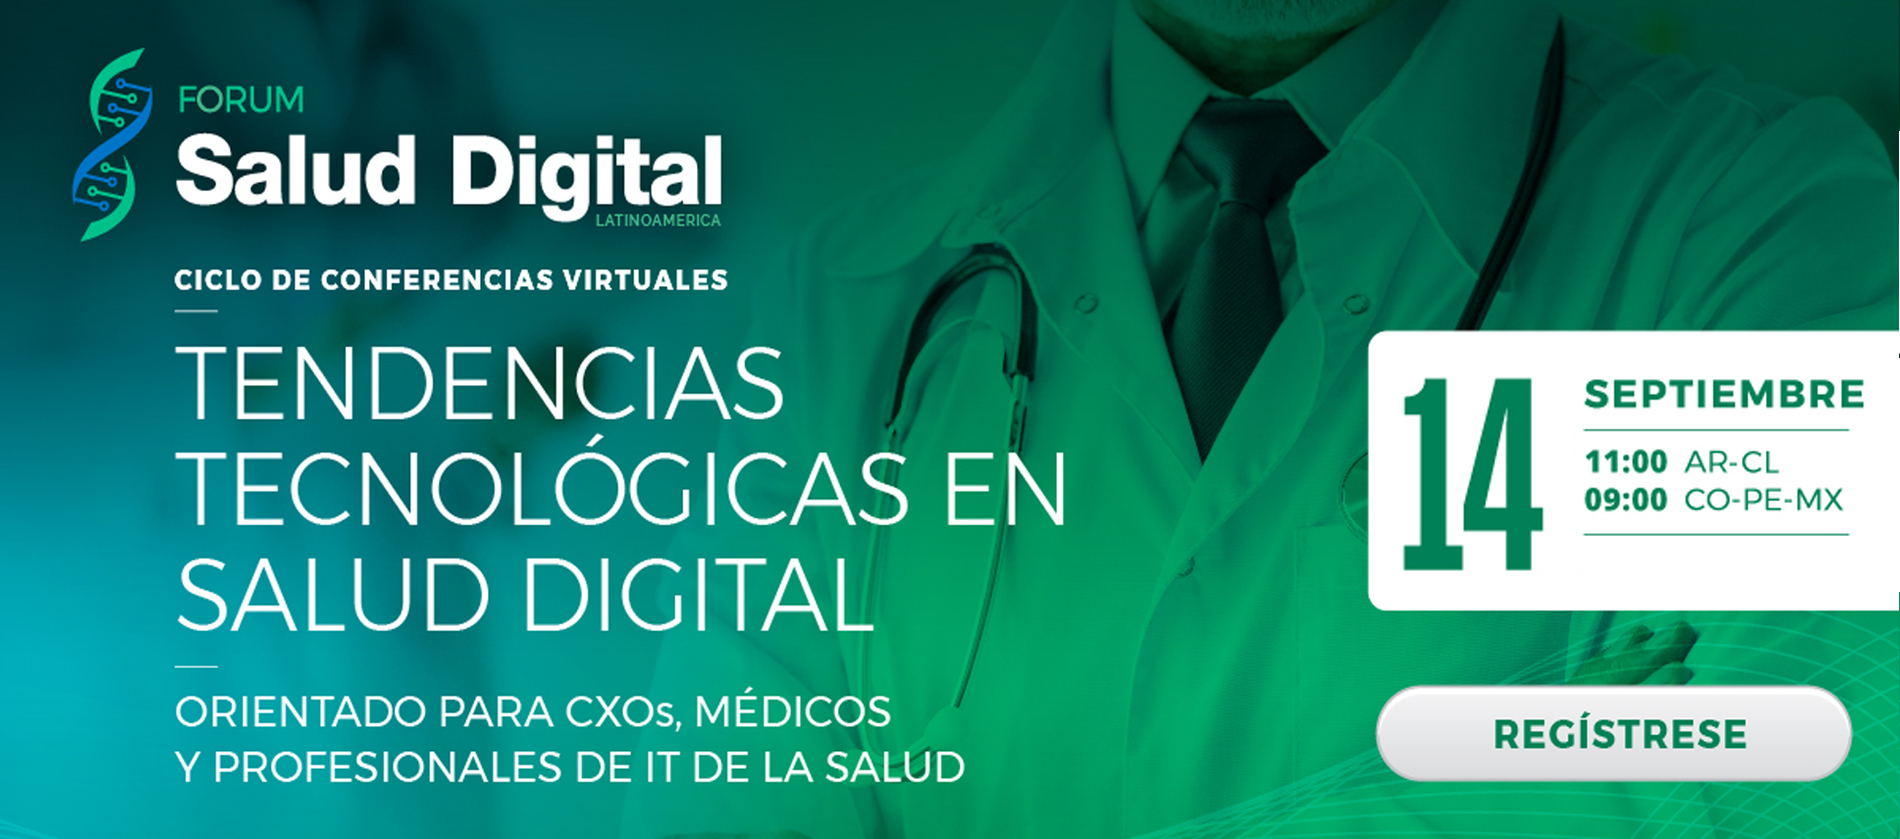 Tendencias tecnológicas en Salud Digital 